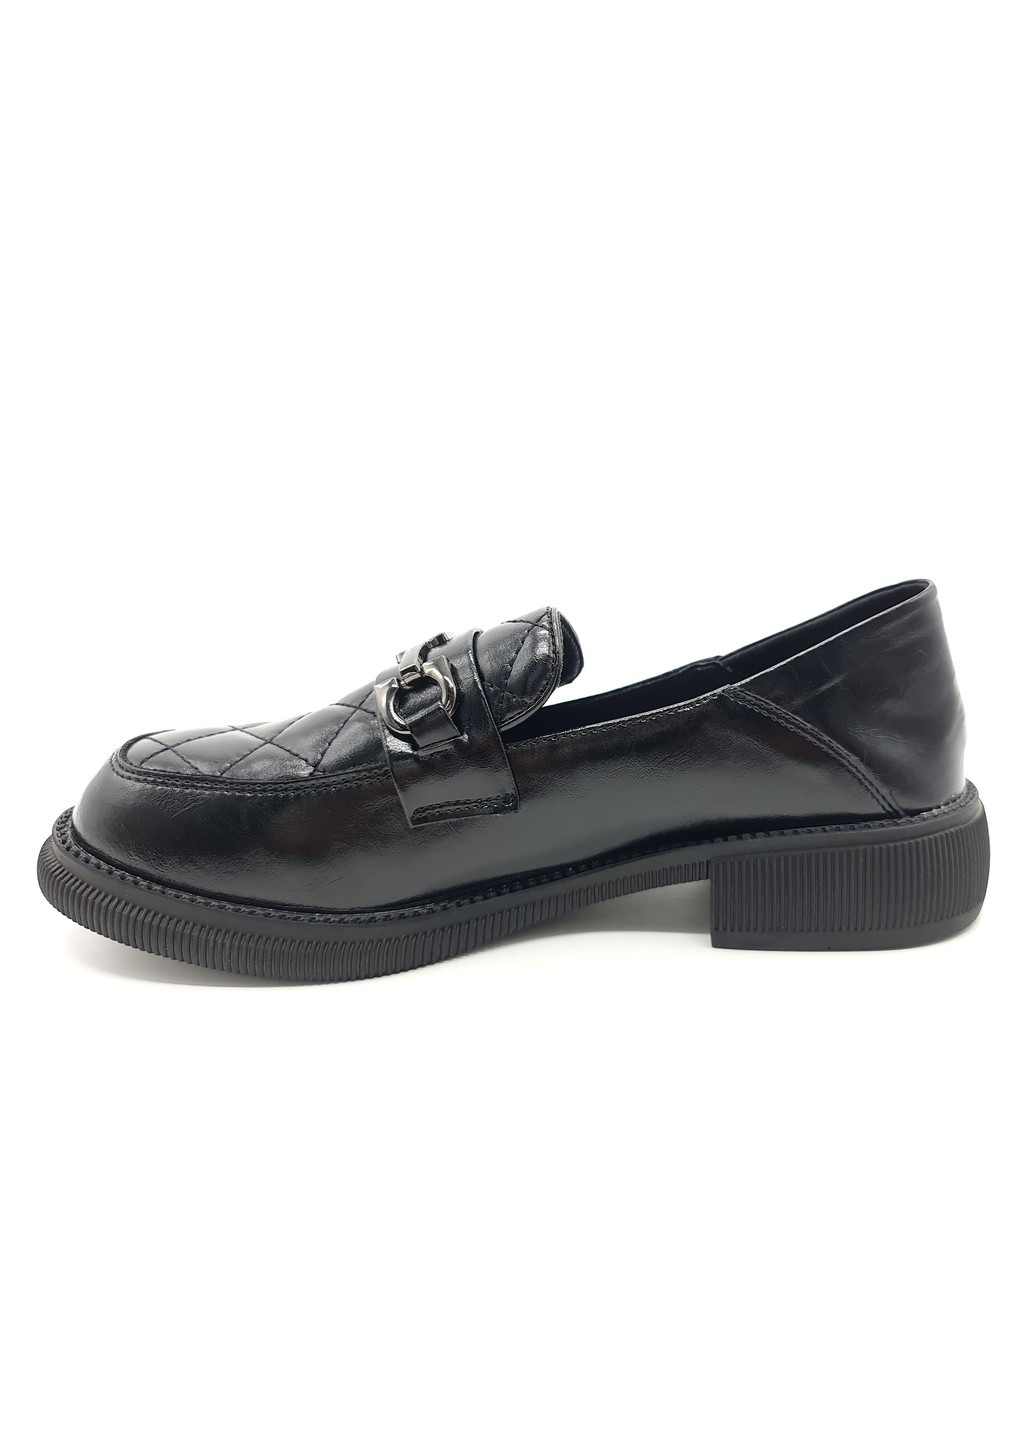 Женские туфли черные кожаные YA-18-10 23,5 см (р) Yalasou